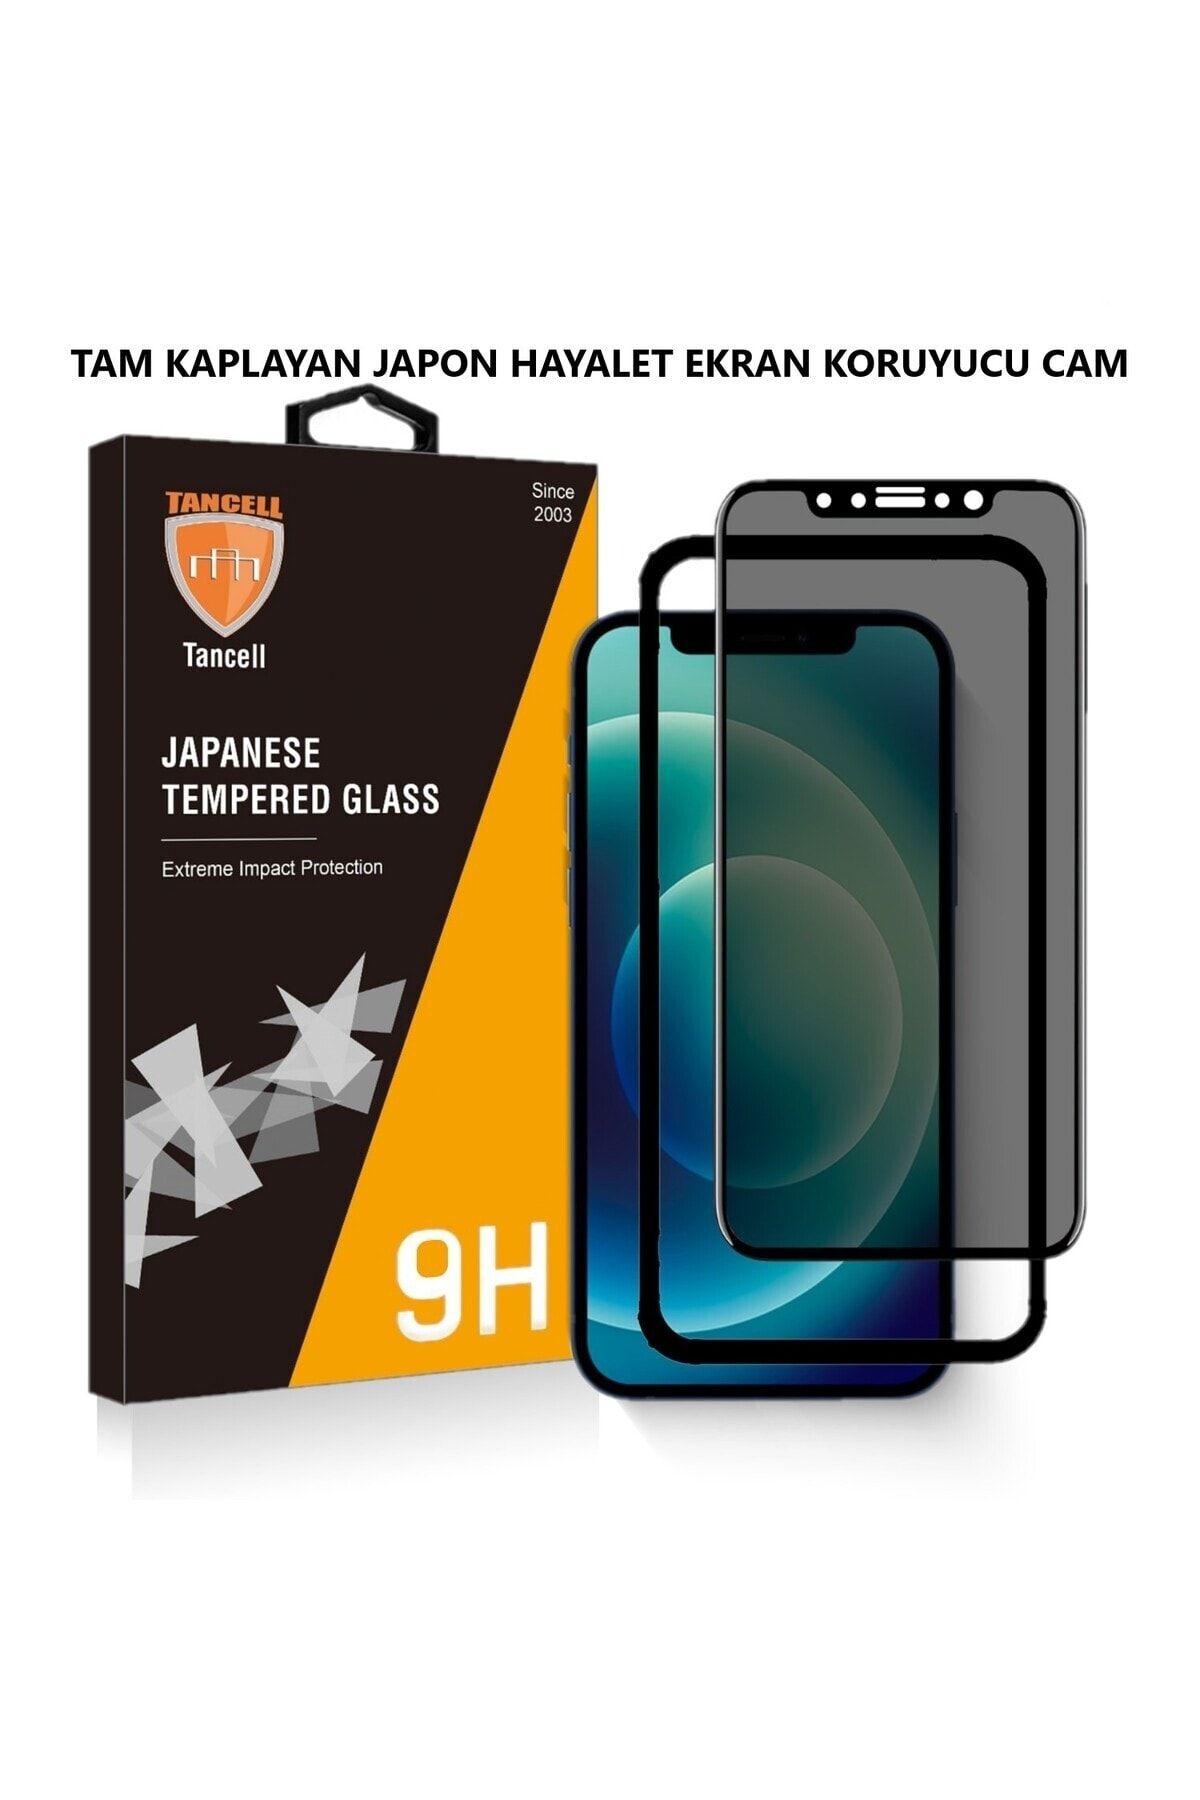 TANCELL İphone 14 Pro Max Uyumlu Hayalet Ekran Koruyucu Tam Kaplayan Japon Kırılmaz Cam 6,7 Inc (2 ADET)